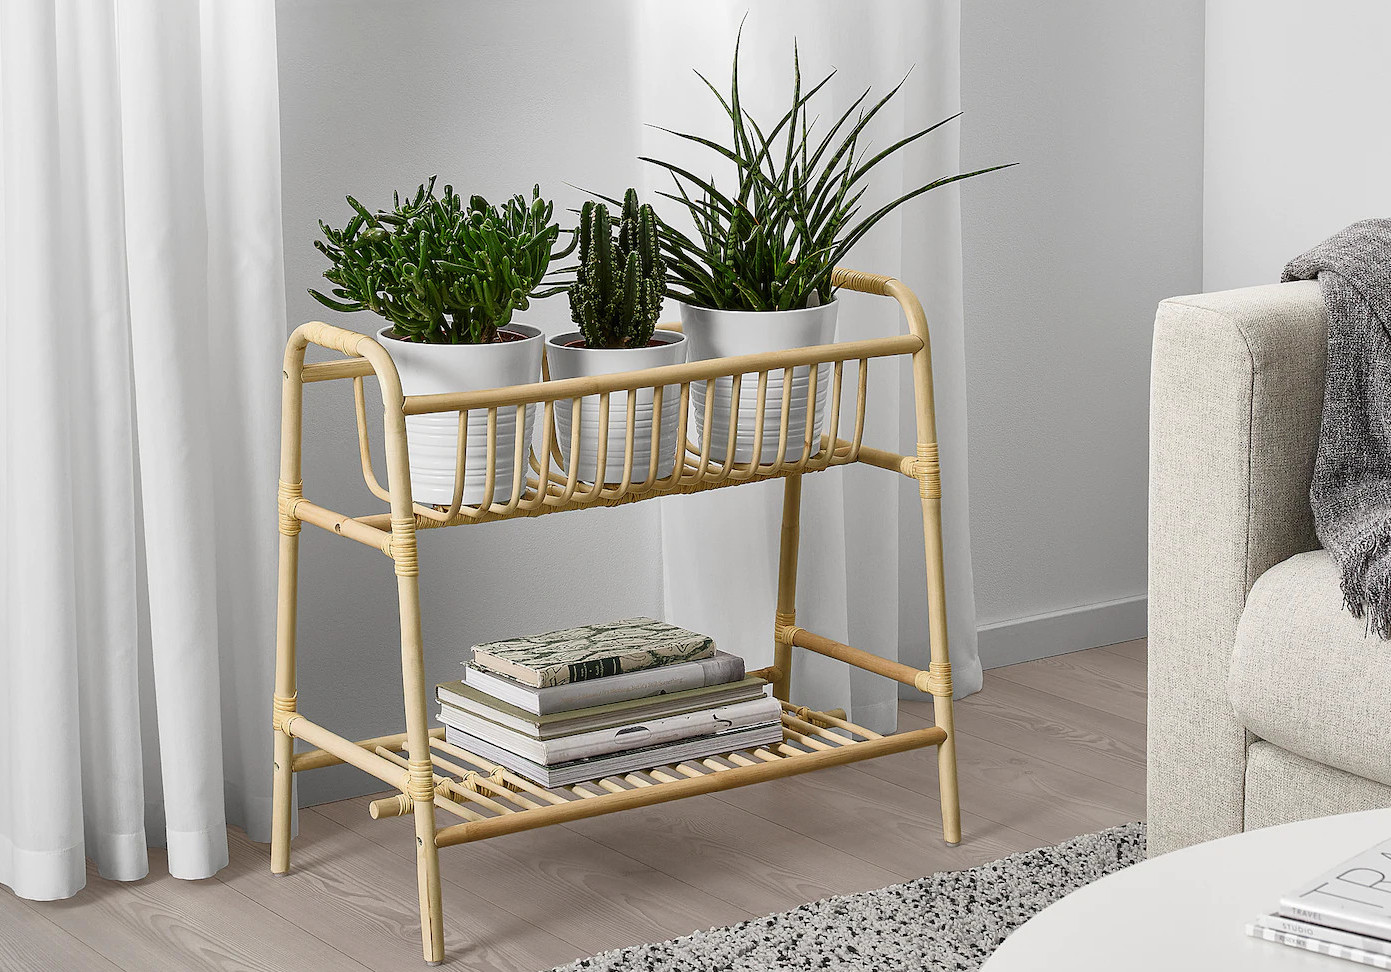 IKEA printemps été 2021, les indispensables supports de plantes